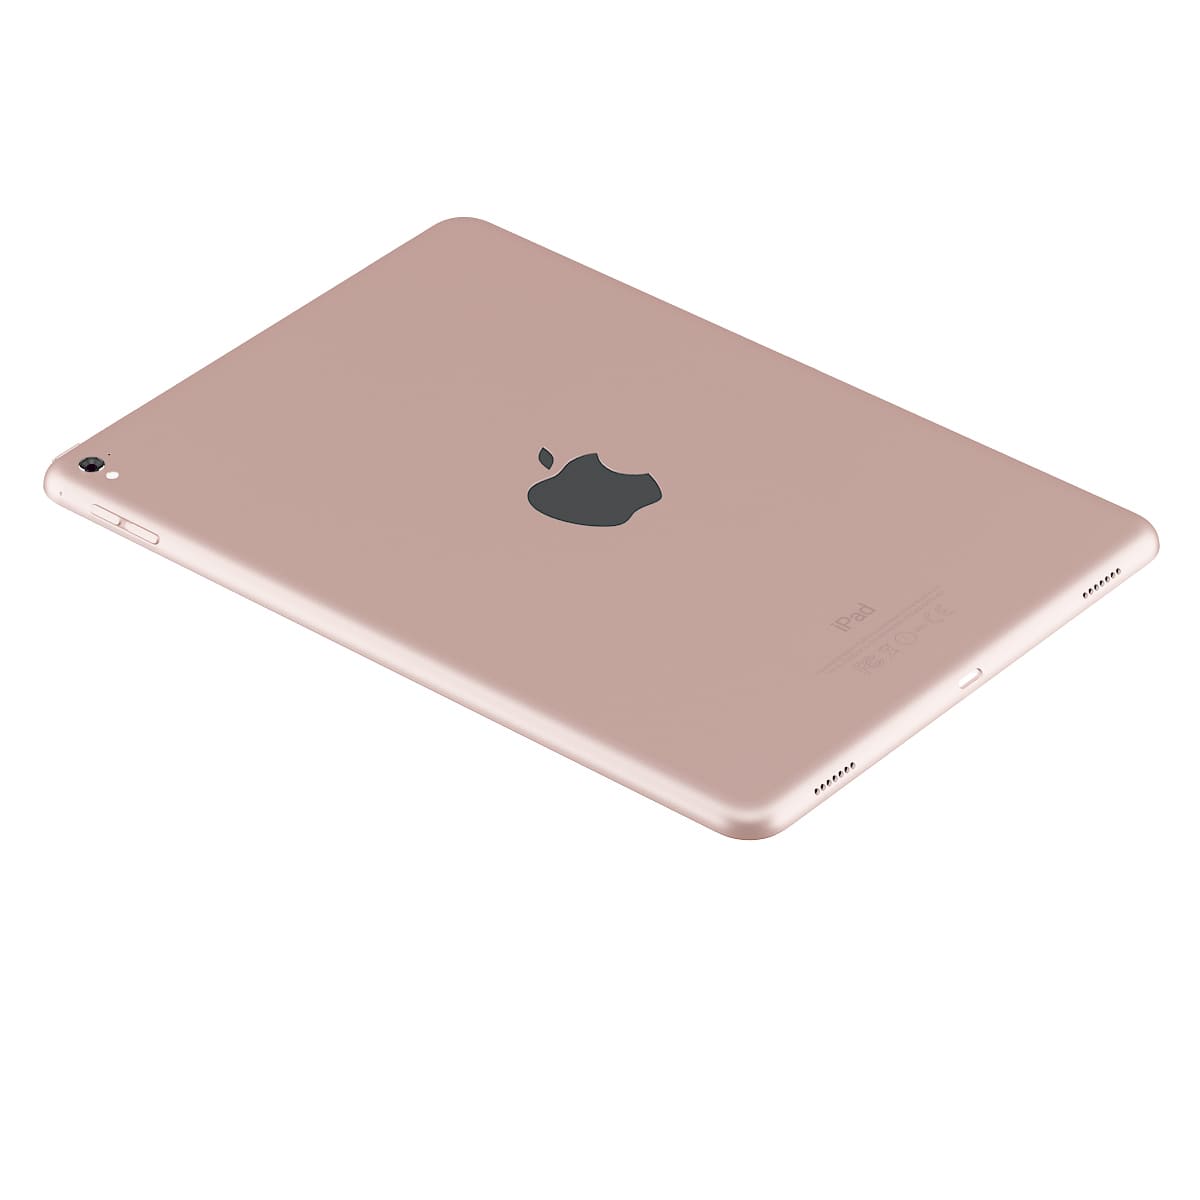 Apple MacBook (2017) Rose Gold Modèle 3D télécharger